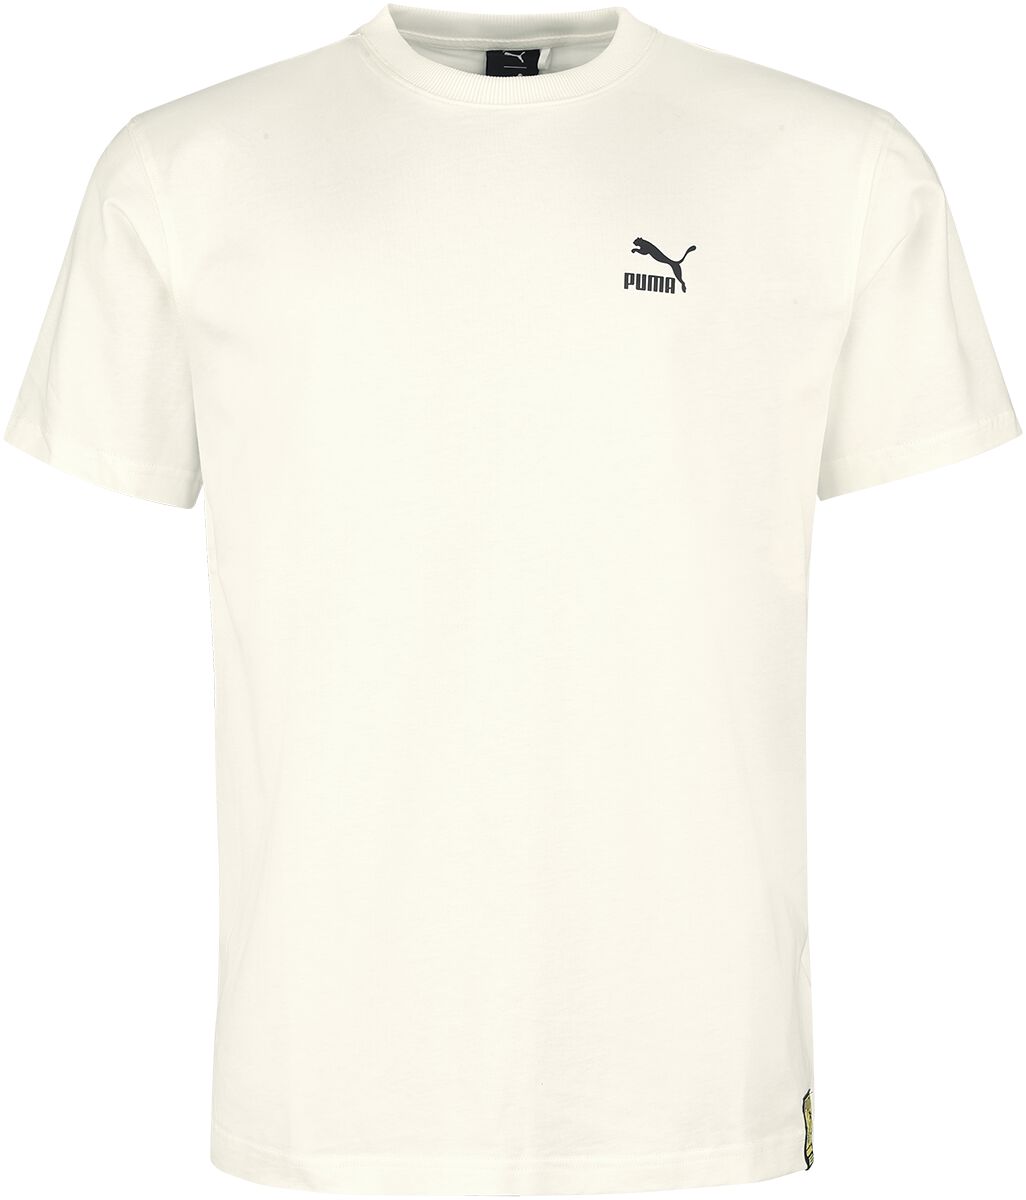 T-Shirt Manches courtes de Puma - PUMA X STAPLE Tee - S à XXL - pour Homme - blanc